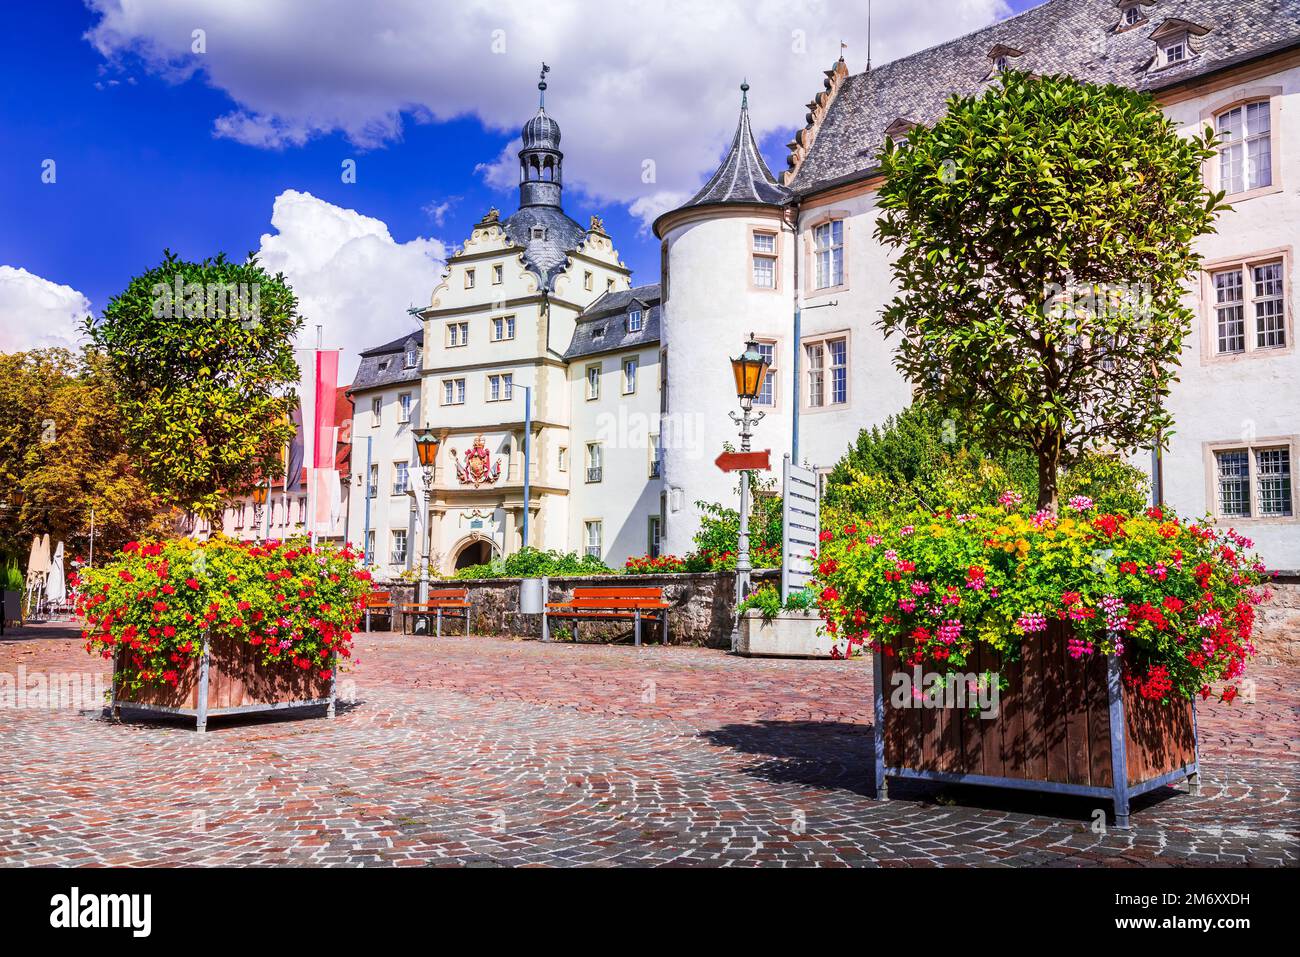 Bad Mergentheim, Germania. Bella cittadina con case tradizionali a graticcio lungo la strada Romantica, incantevoli scenari della Baviera. Foto Stock